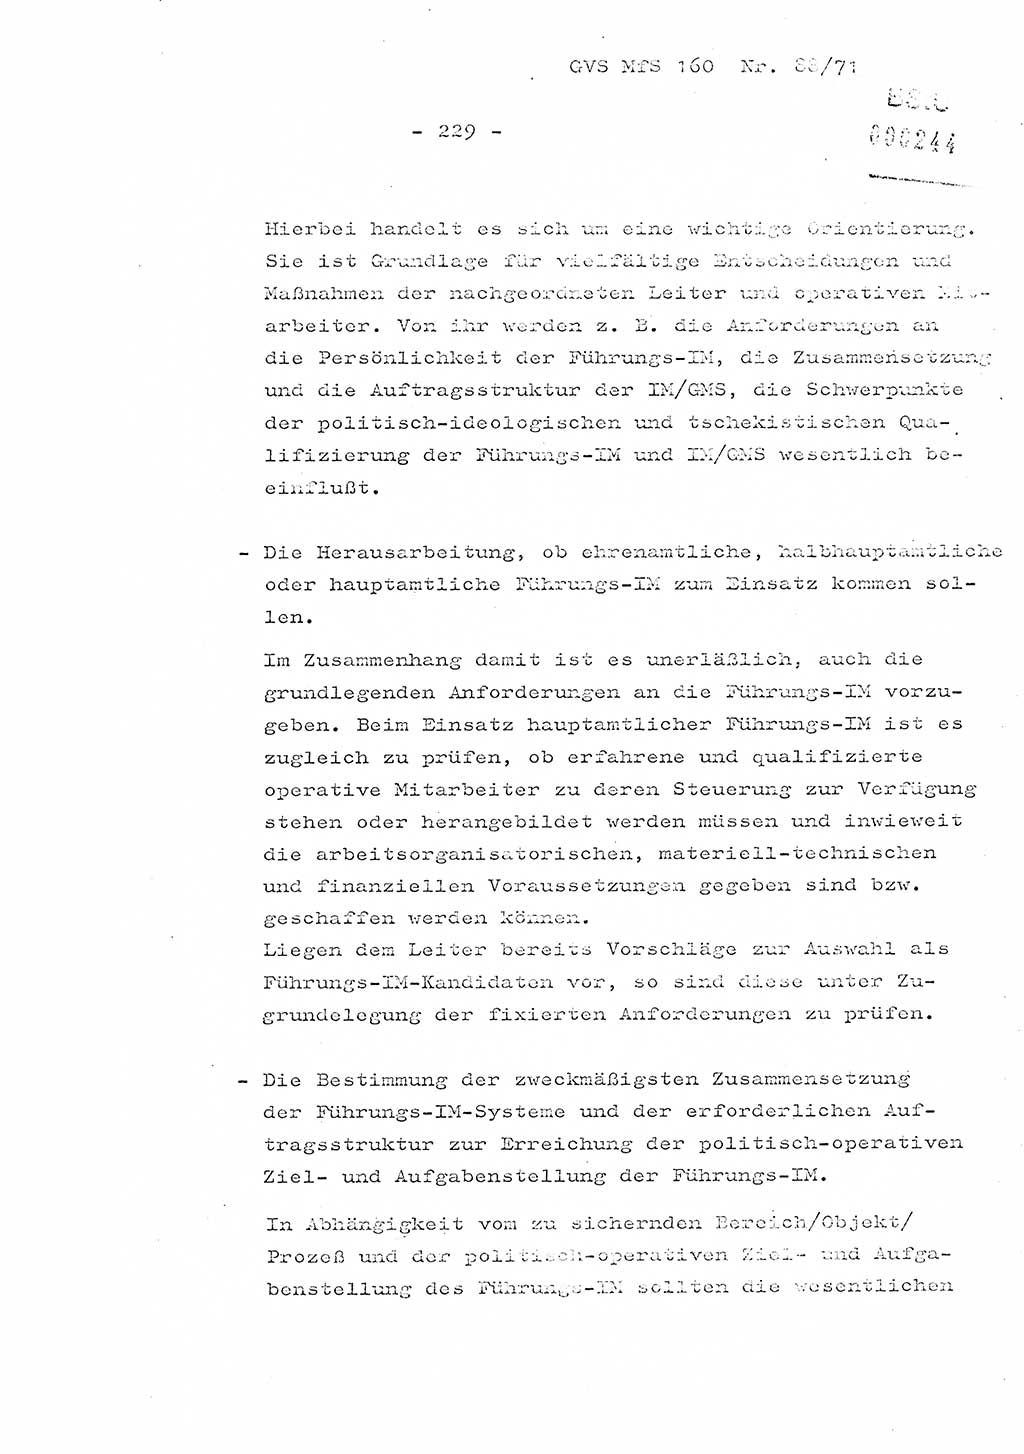 Dissertation Oberstleutnant Josef Schwarz (BV Schwerin), Major Fritz Amm (JHS), Hauptmann Peter Gräßler (JHS), Ministerium für Staatssicherheit (MfS) [Deutsche Demokratische Republik (DDR)], Juristische Hochschule (JHS), Geheime Verschlußsache (GVS) 160-88/71, Potsdam 1972, Seite 229 (Diss. MfS DDR JHS GVS 160-88/71 1972, S. 229)